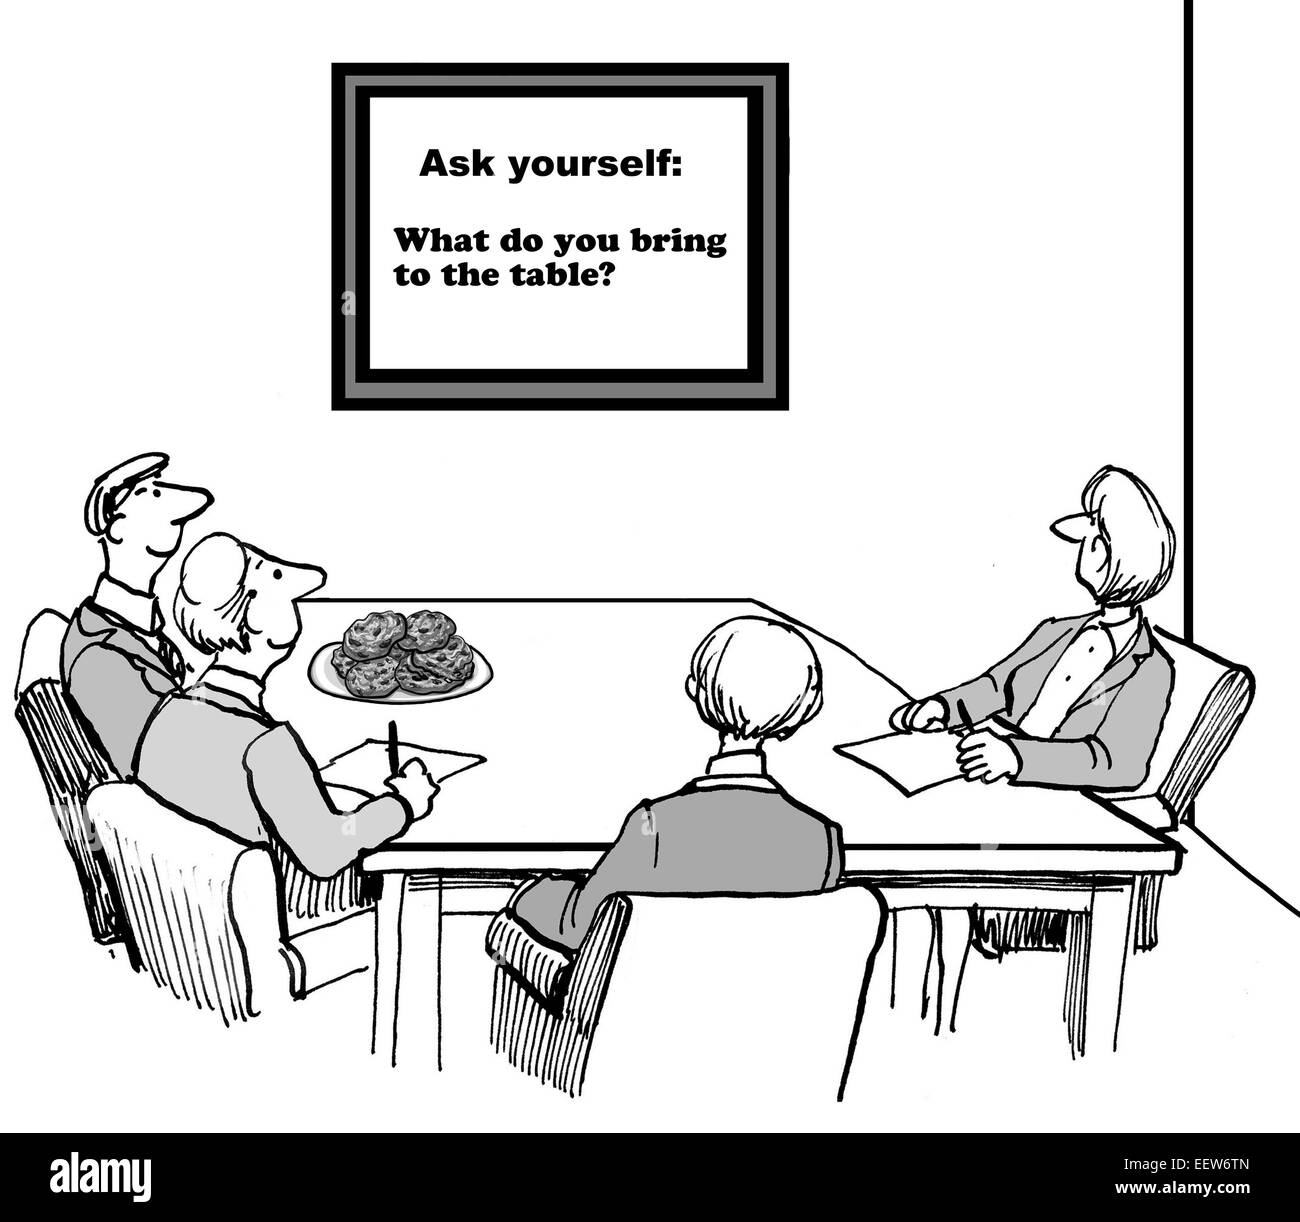 Cartoon von Geschäftsleuten in einer Besprechung, Blick auf ein Schild, das sagt "Fragen Sie sich: Was bringen Sie auf den Tisch". Stockfoto